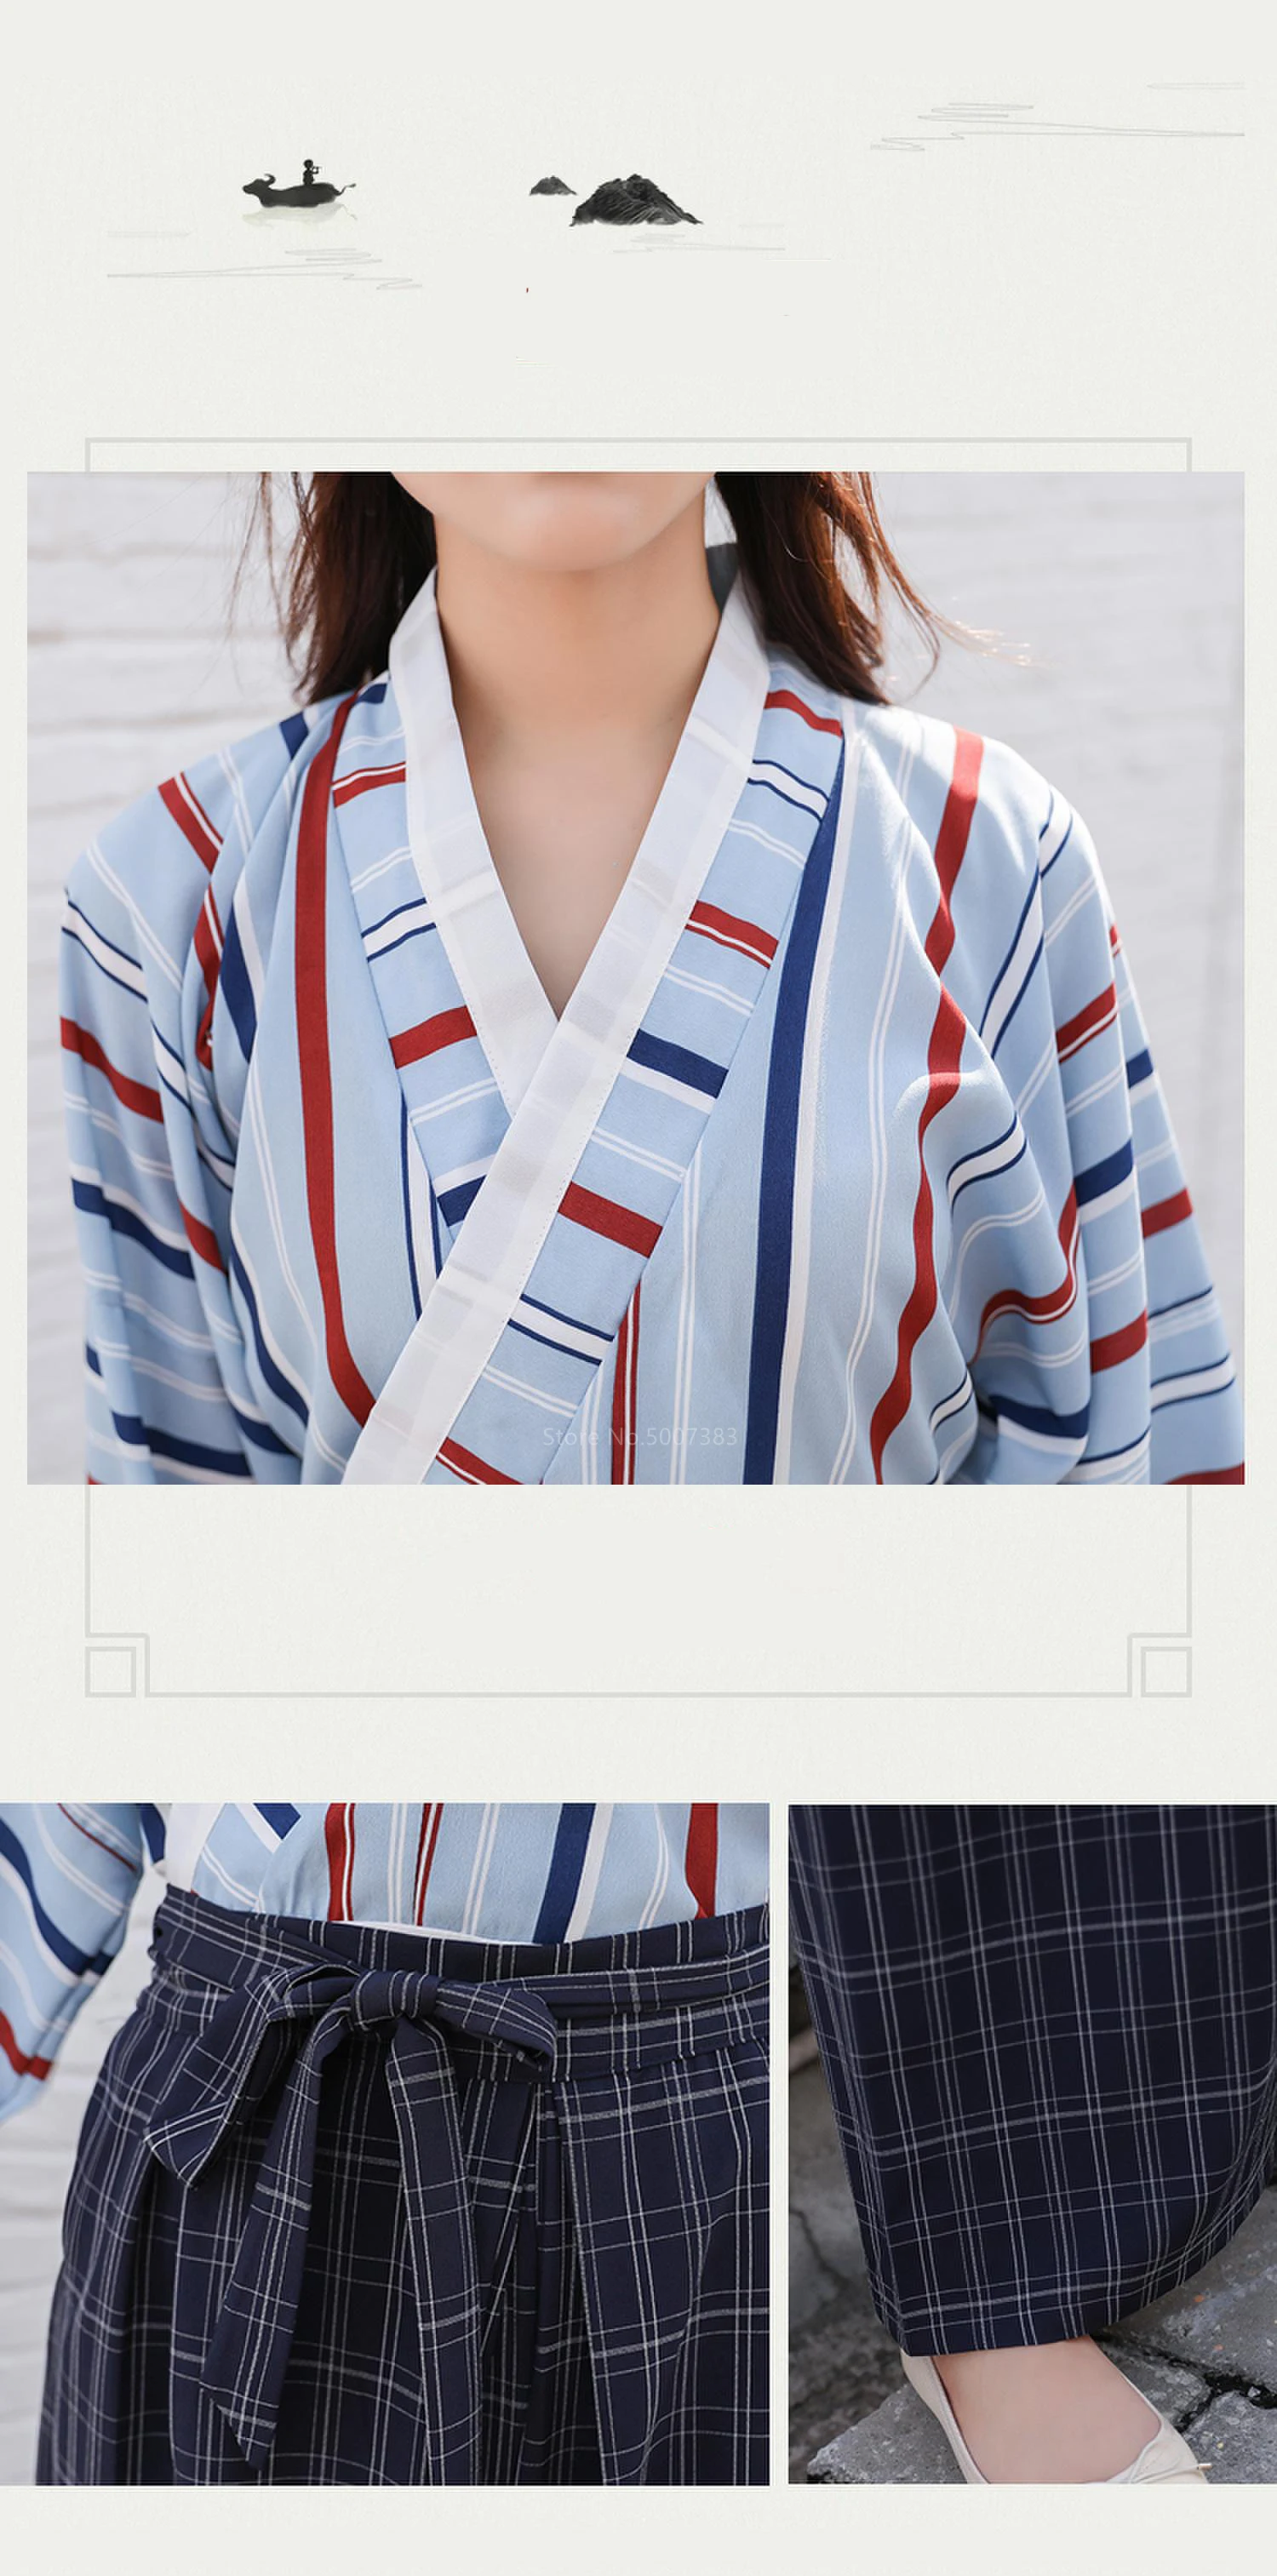 Японский стиль традиционная одежда кимоно косплей для женщин Kawaii Девушка уличная мода Haori полосатый топ клетчатые брюки костюм